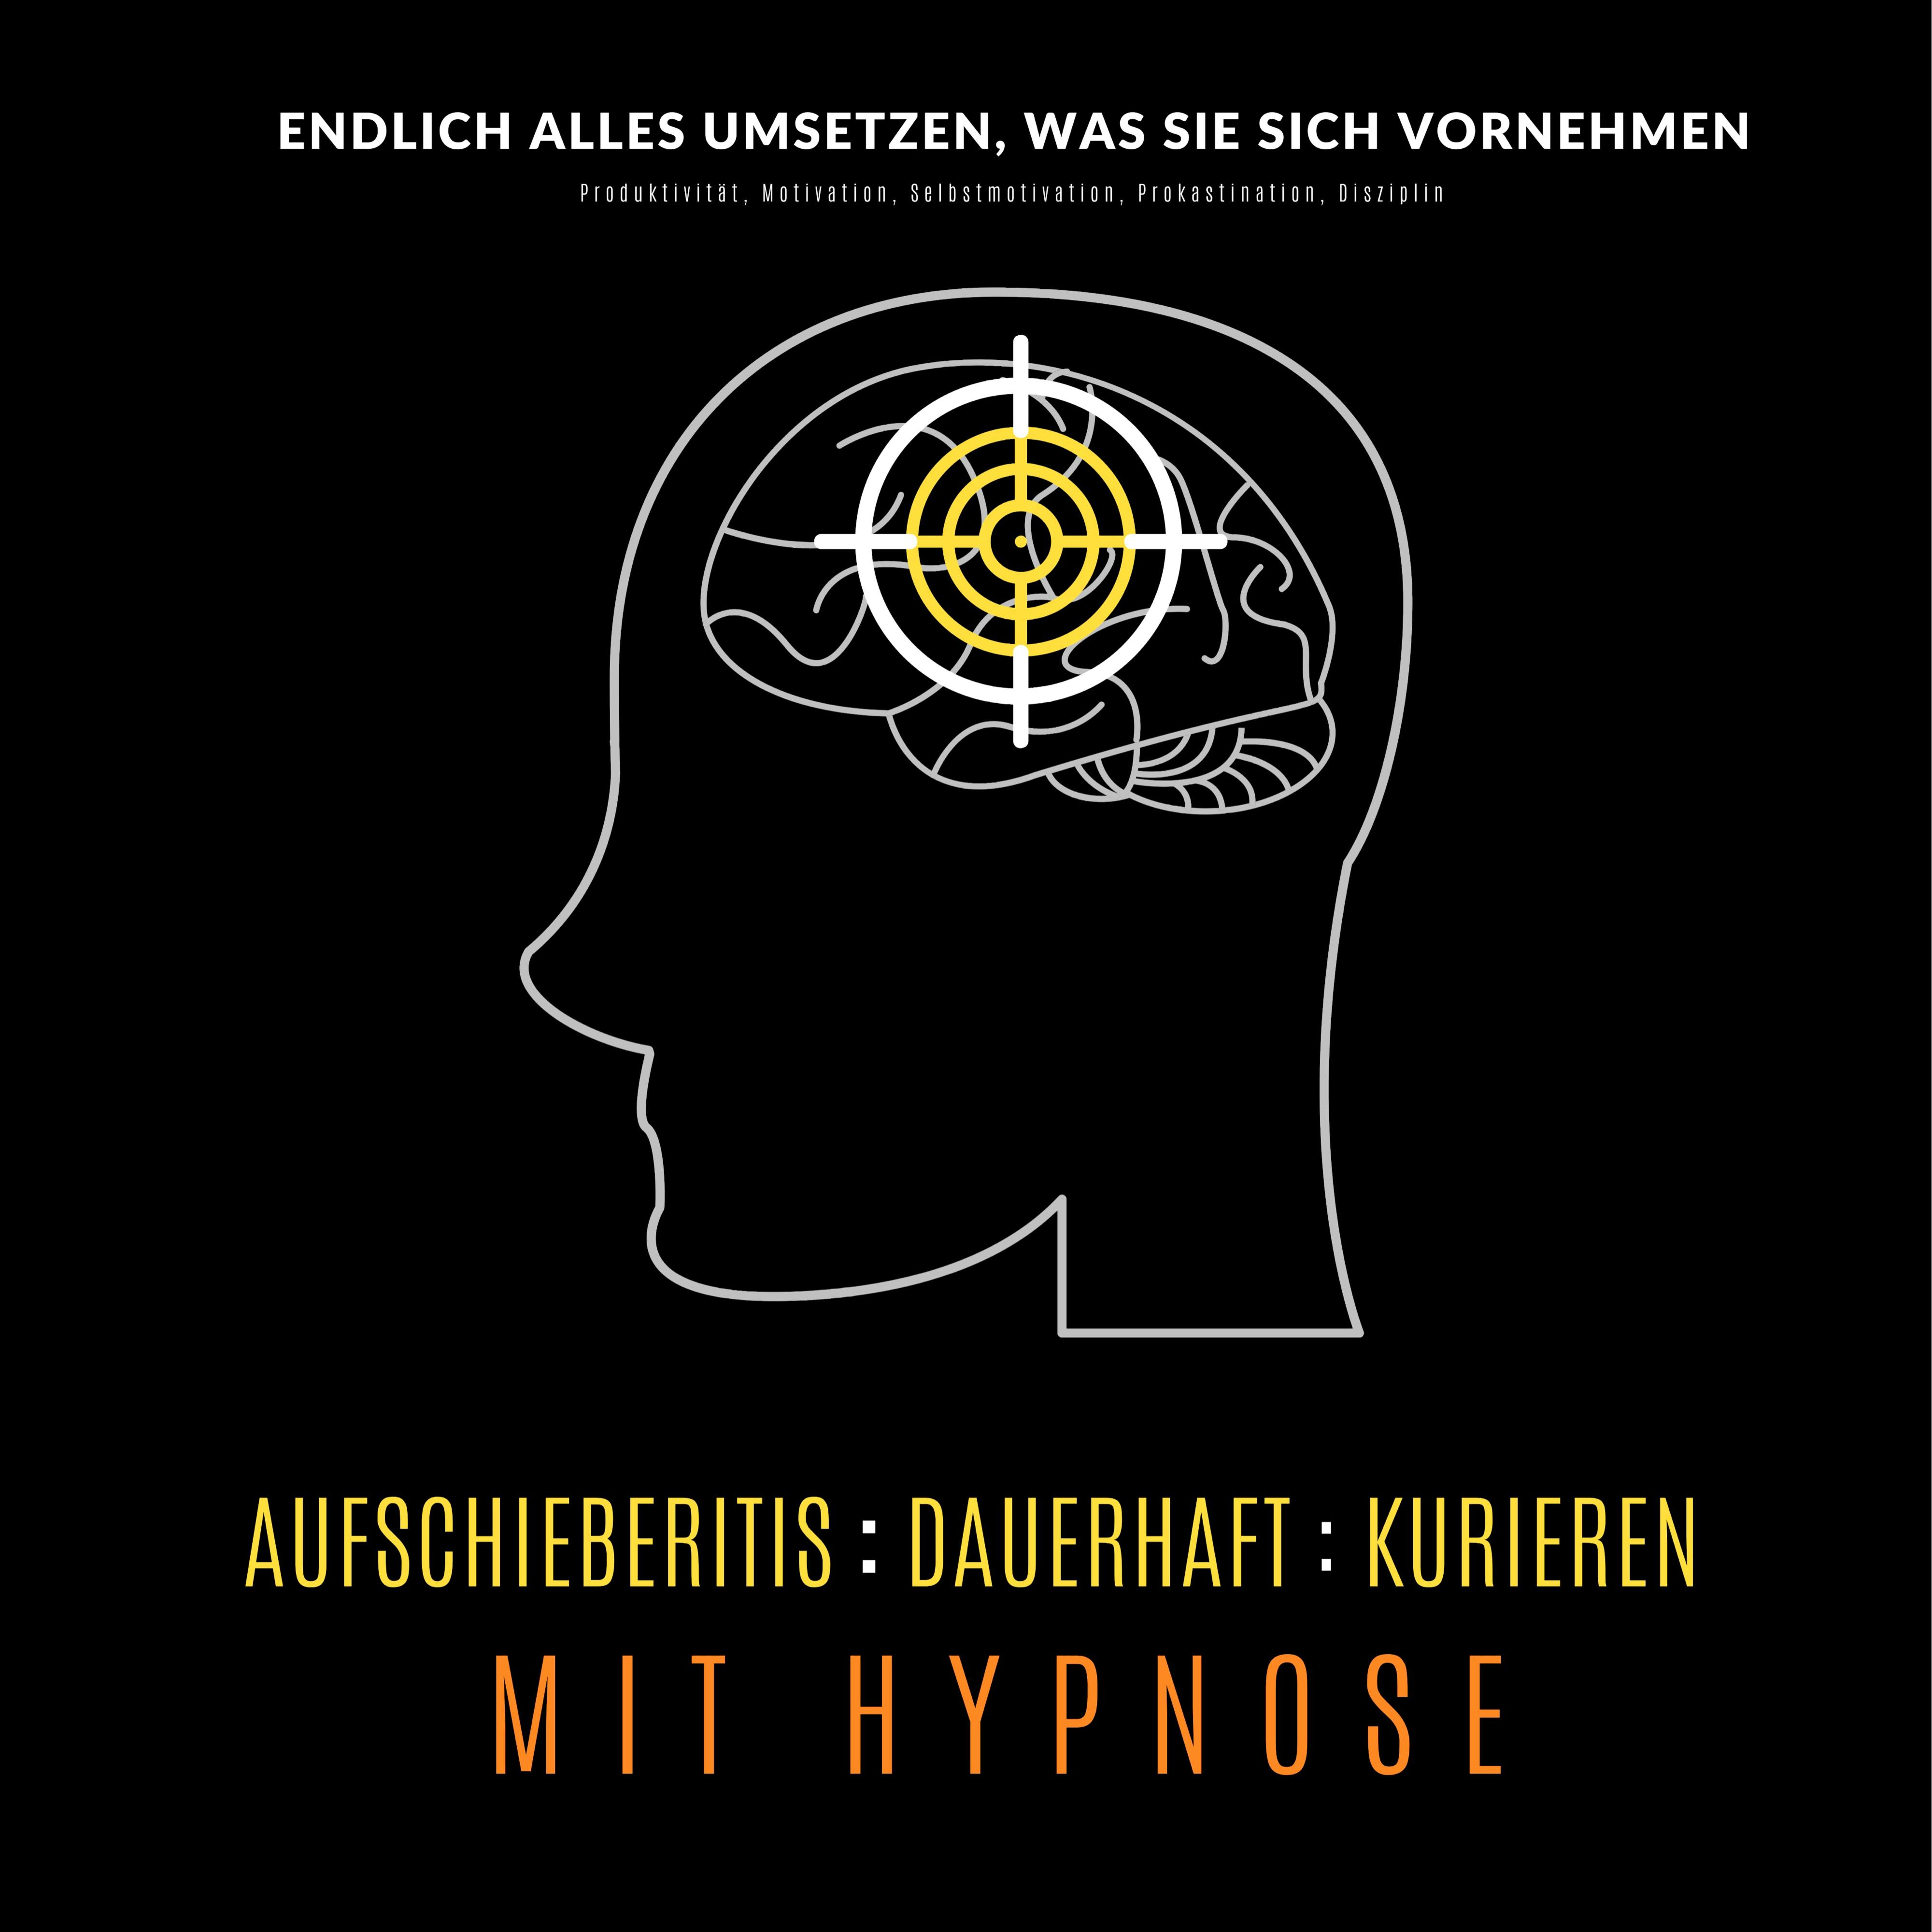 Aufschieberitis kurieren mit Hypnose: Endlich umsetzen, was Sie sich vornehmen: Produktivität, Motivation, Selbstmotivation, Prokastination, Disziplin - undefined